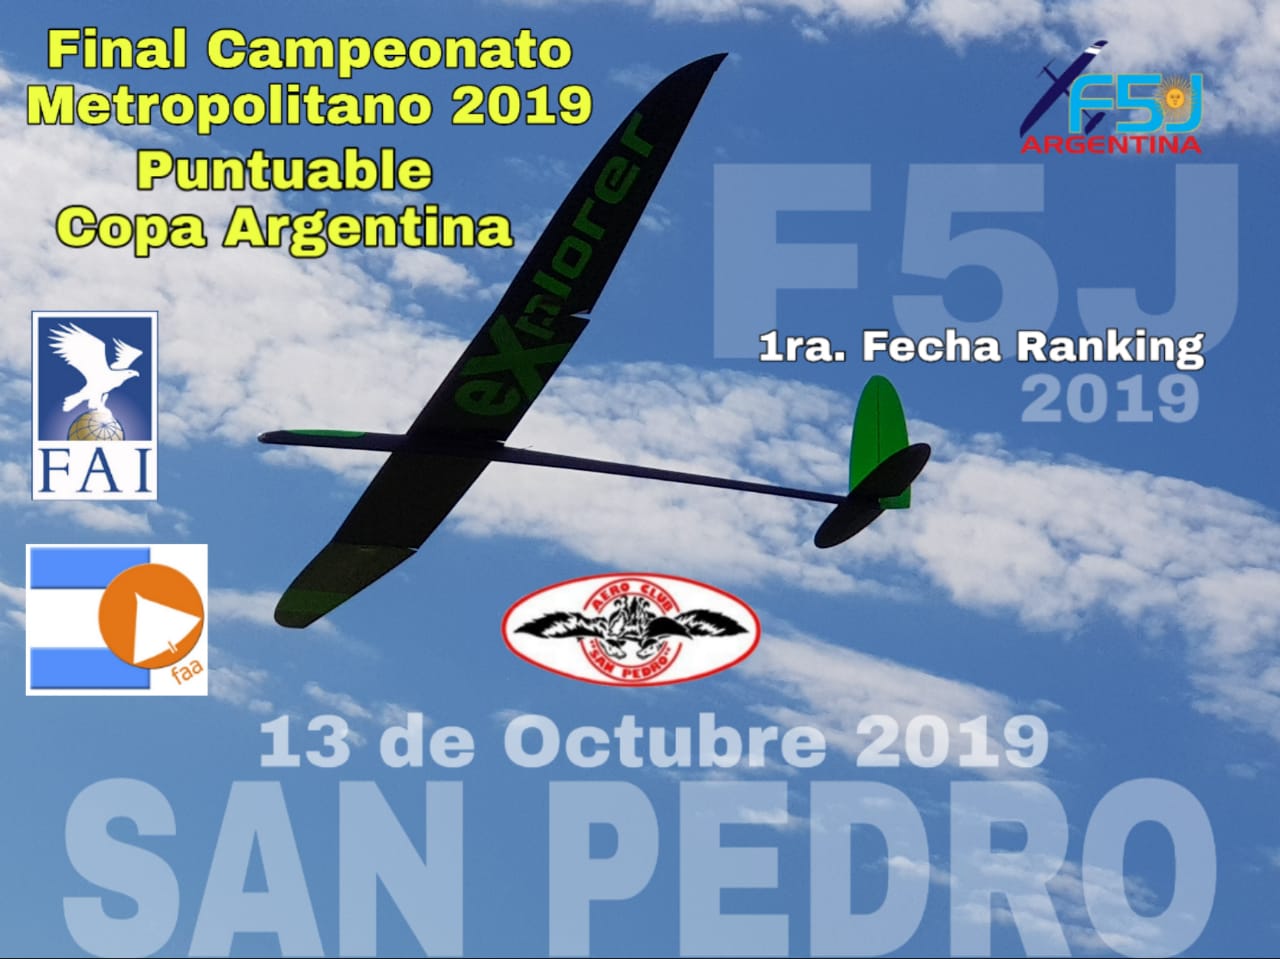 Suspendida la 4° fecha Venado Tuerto F5j – Chimangos del Sur – 03/11/19 – Reprogramada la Final en Carlos Ken del 13/10/19